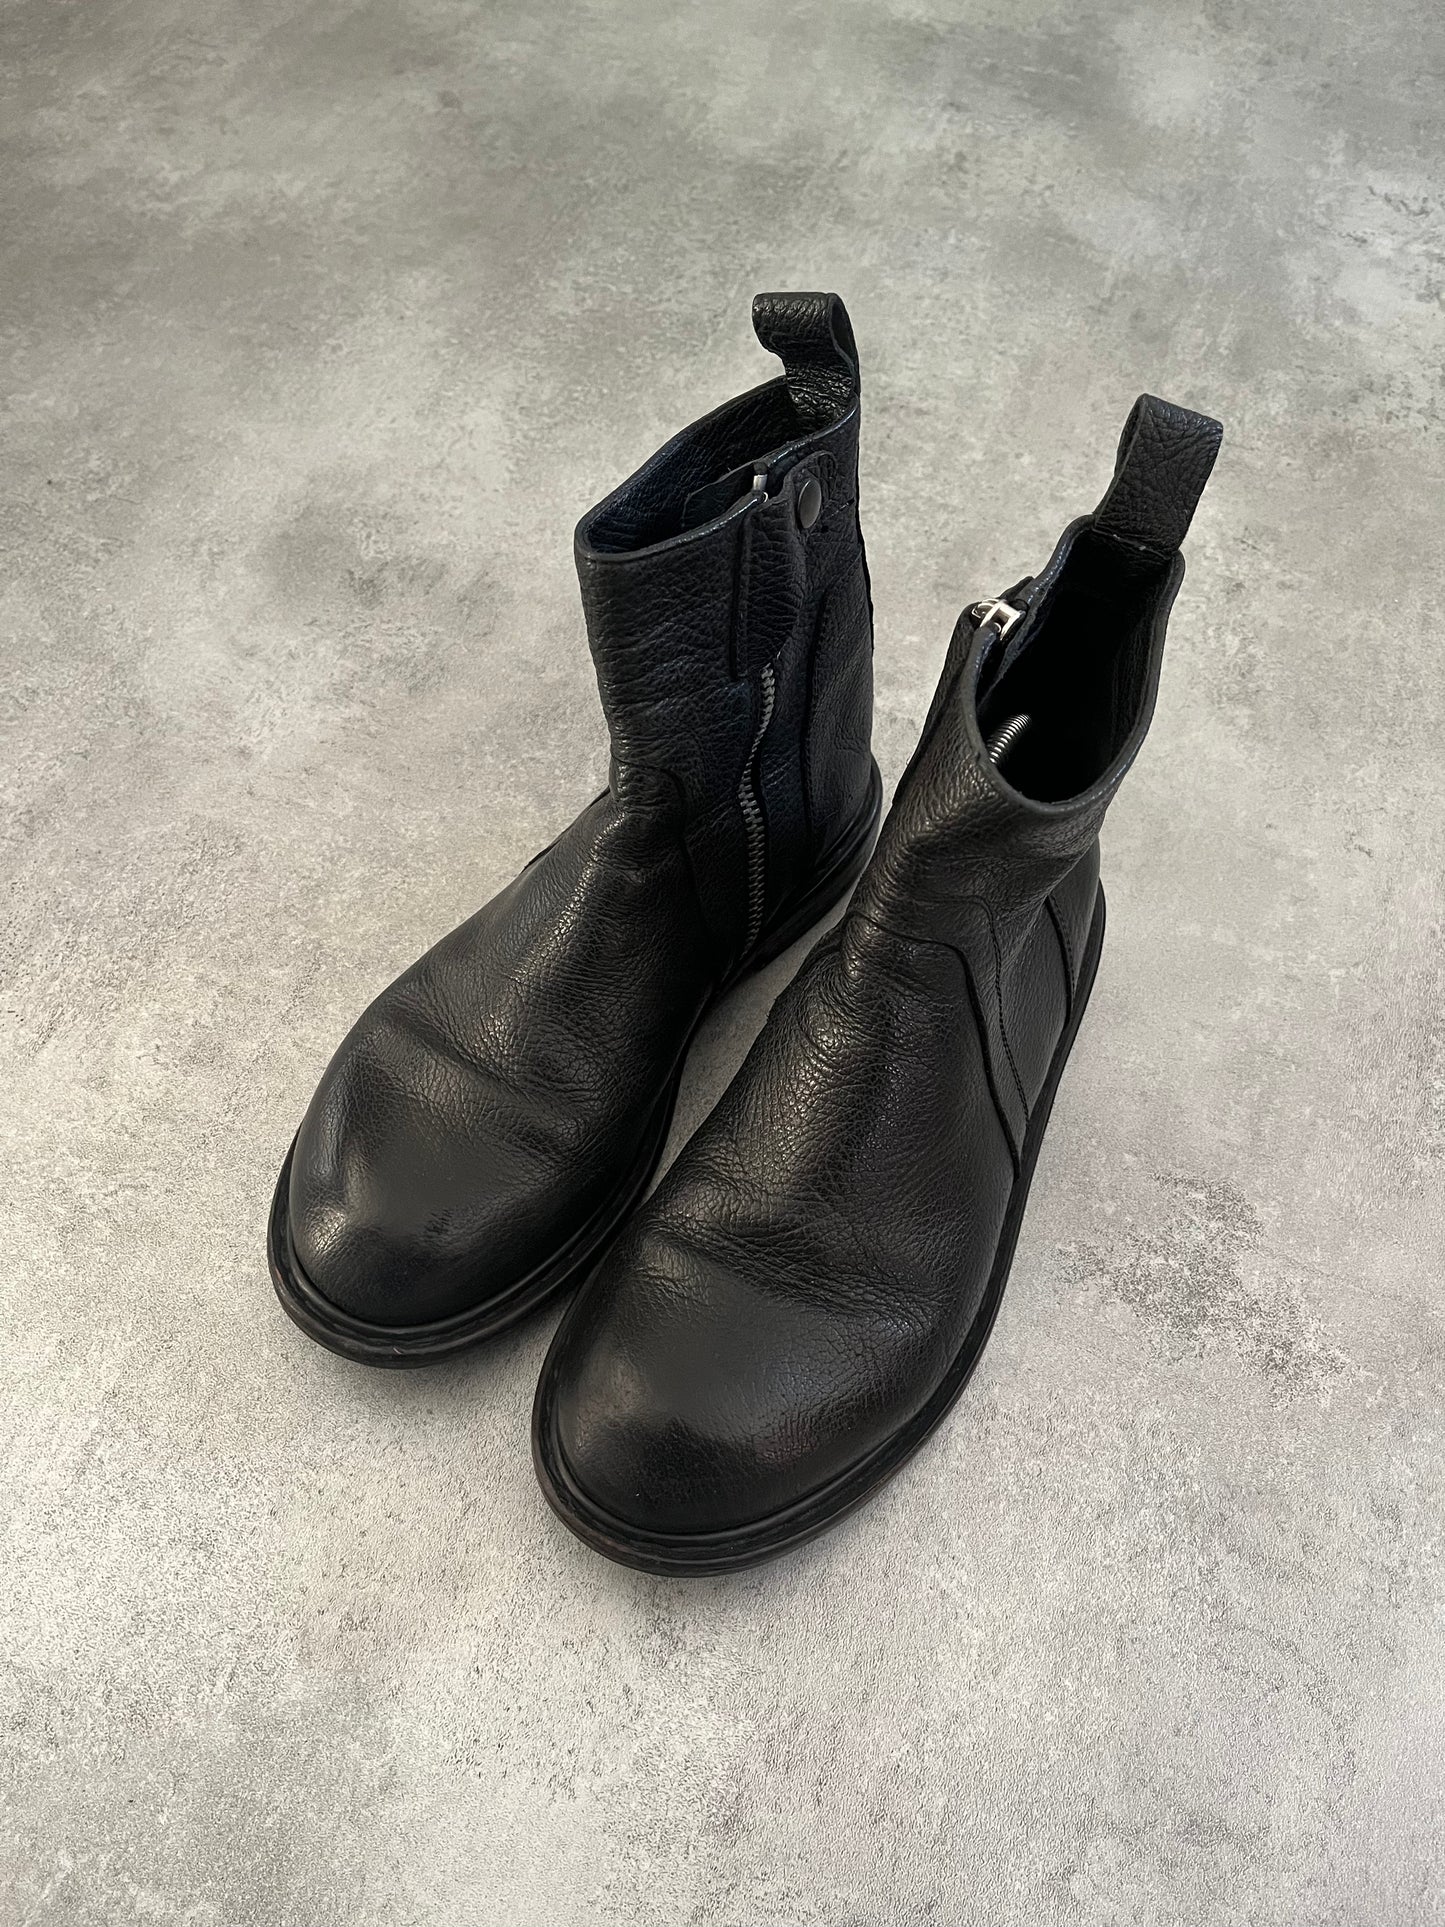 Rick Owens Rotary Zipped Leather Boots (42eu/us8.5)  (42) - 3